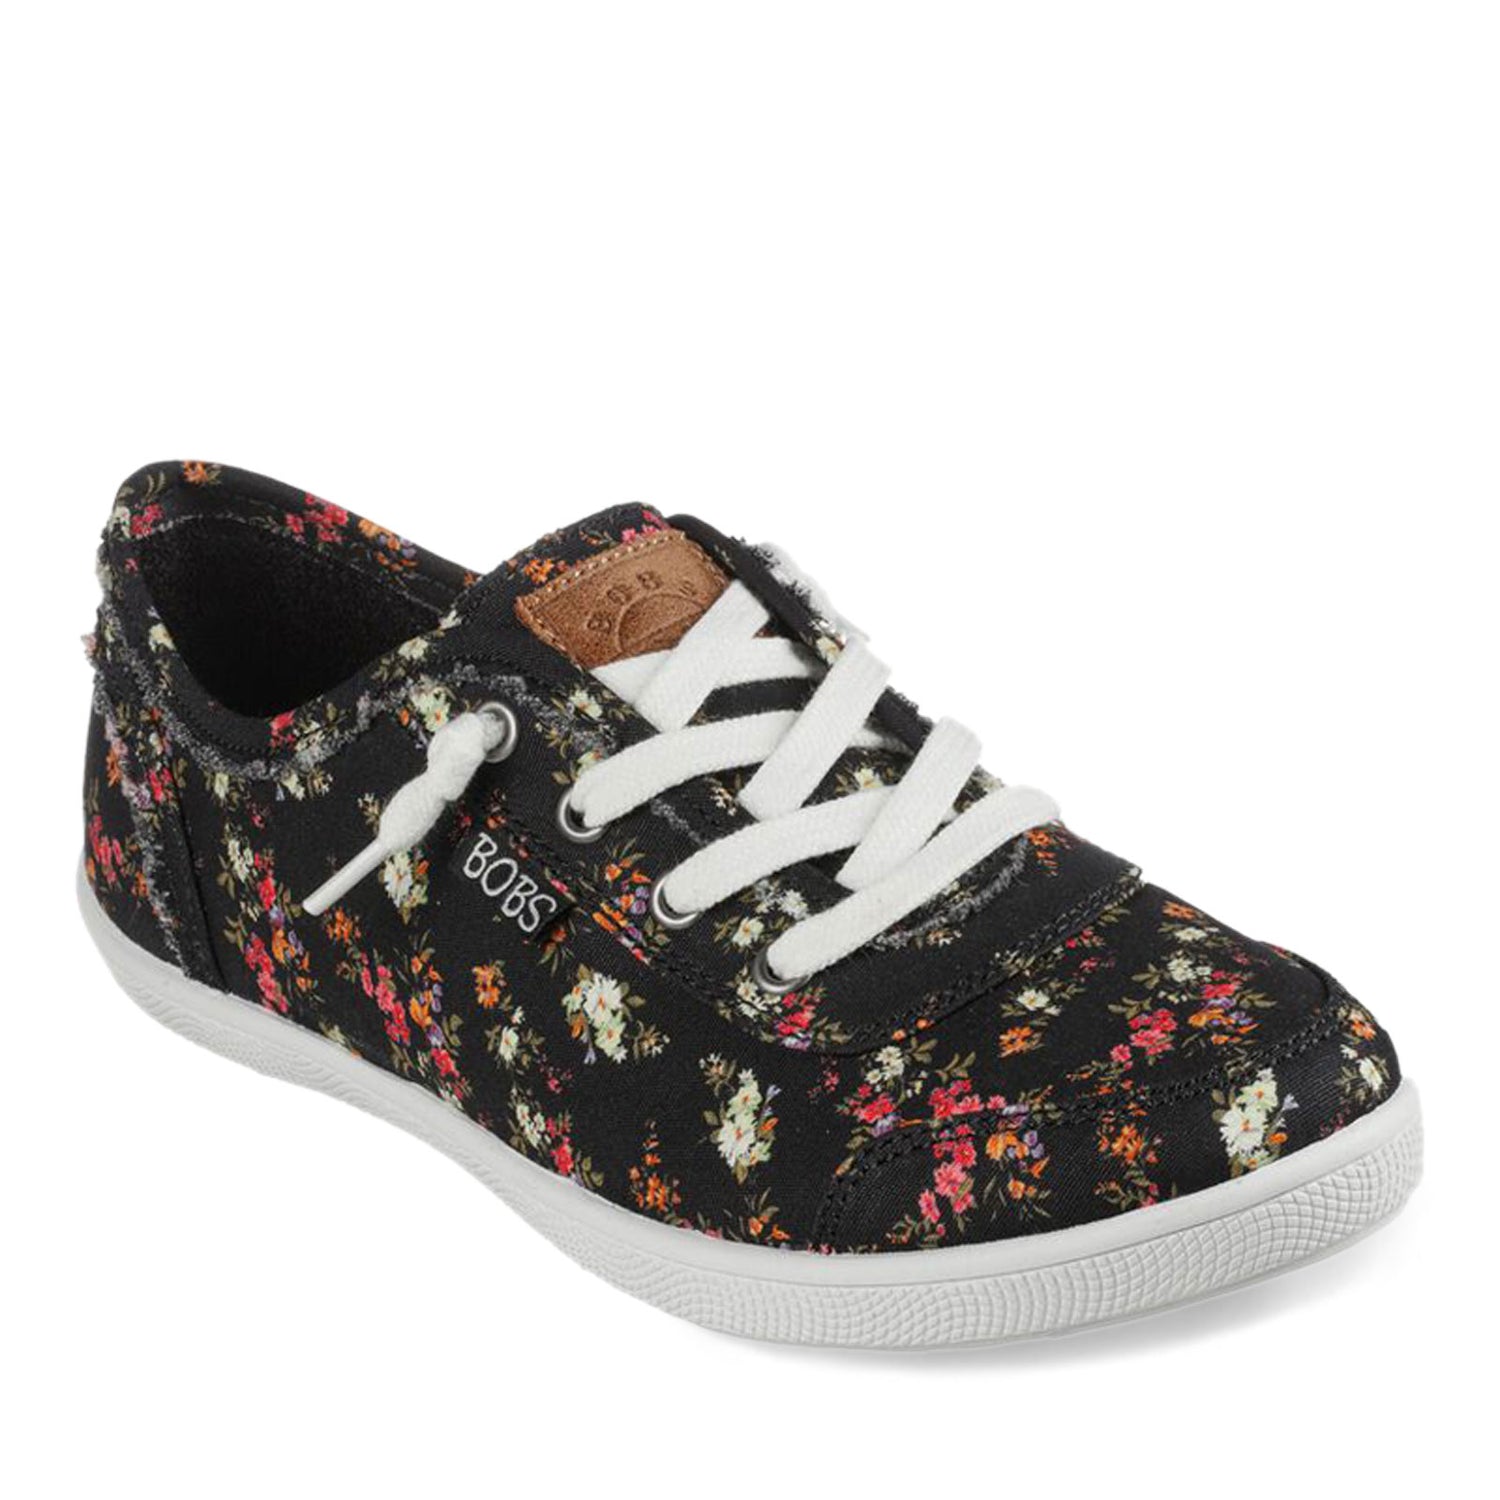 Peltz Shoes  Women's Skechers BOBS B Cute - Floral Kiss Sneaker BLACK MULTI 113849-BKMT